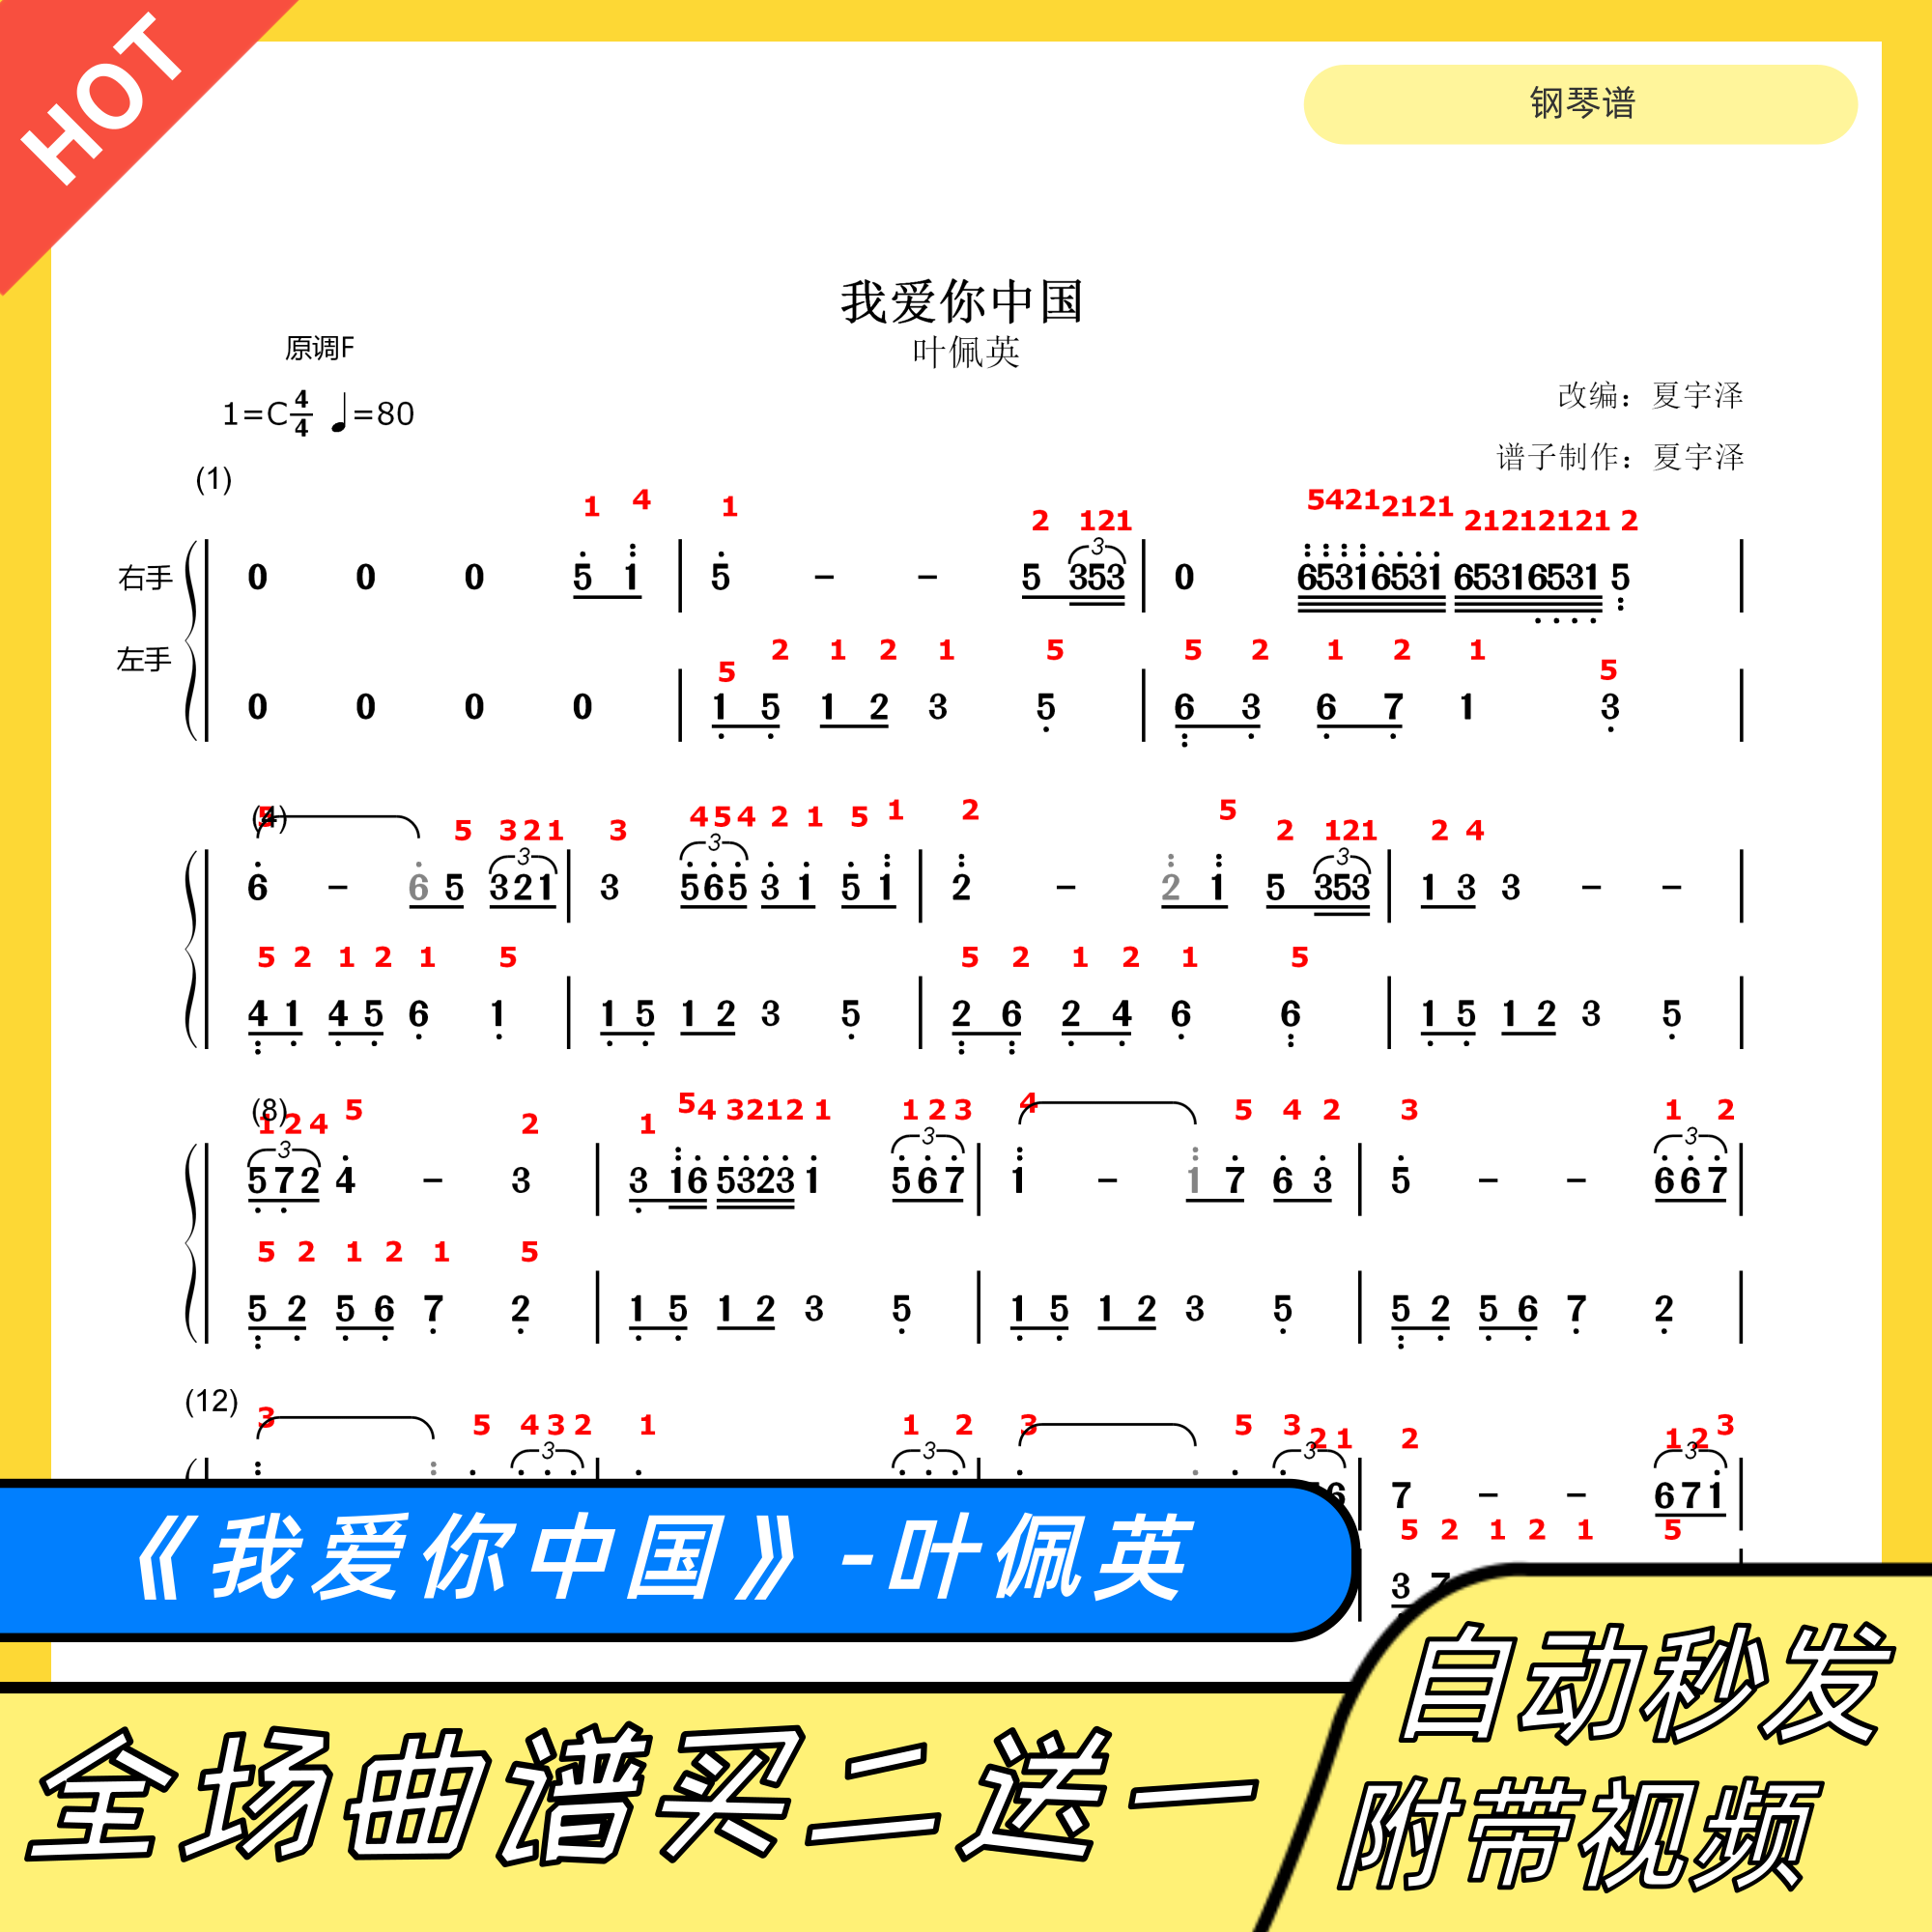 我爱你中国 钢琴谱 双手简谱 电子版 独奏 数字谱 叶佩英 夏宇泽